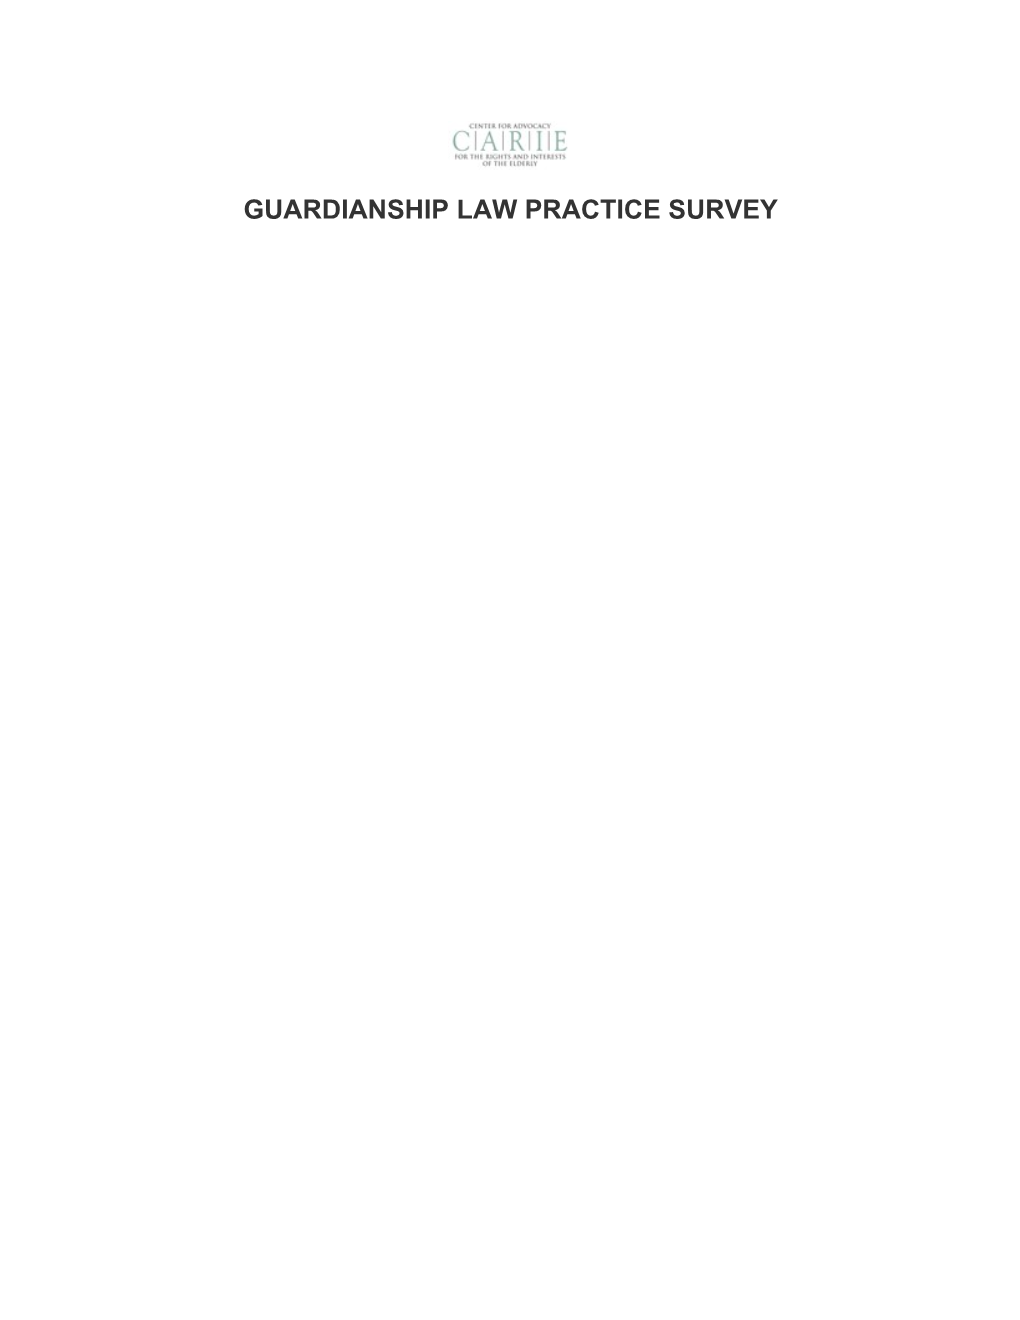 Guardianship Law Practice Survey